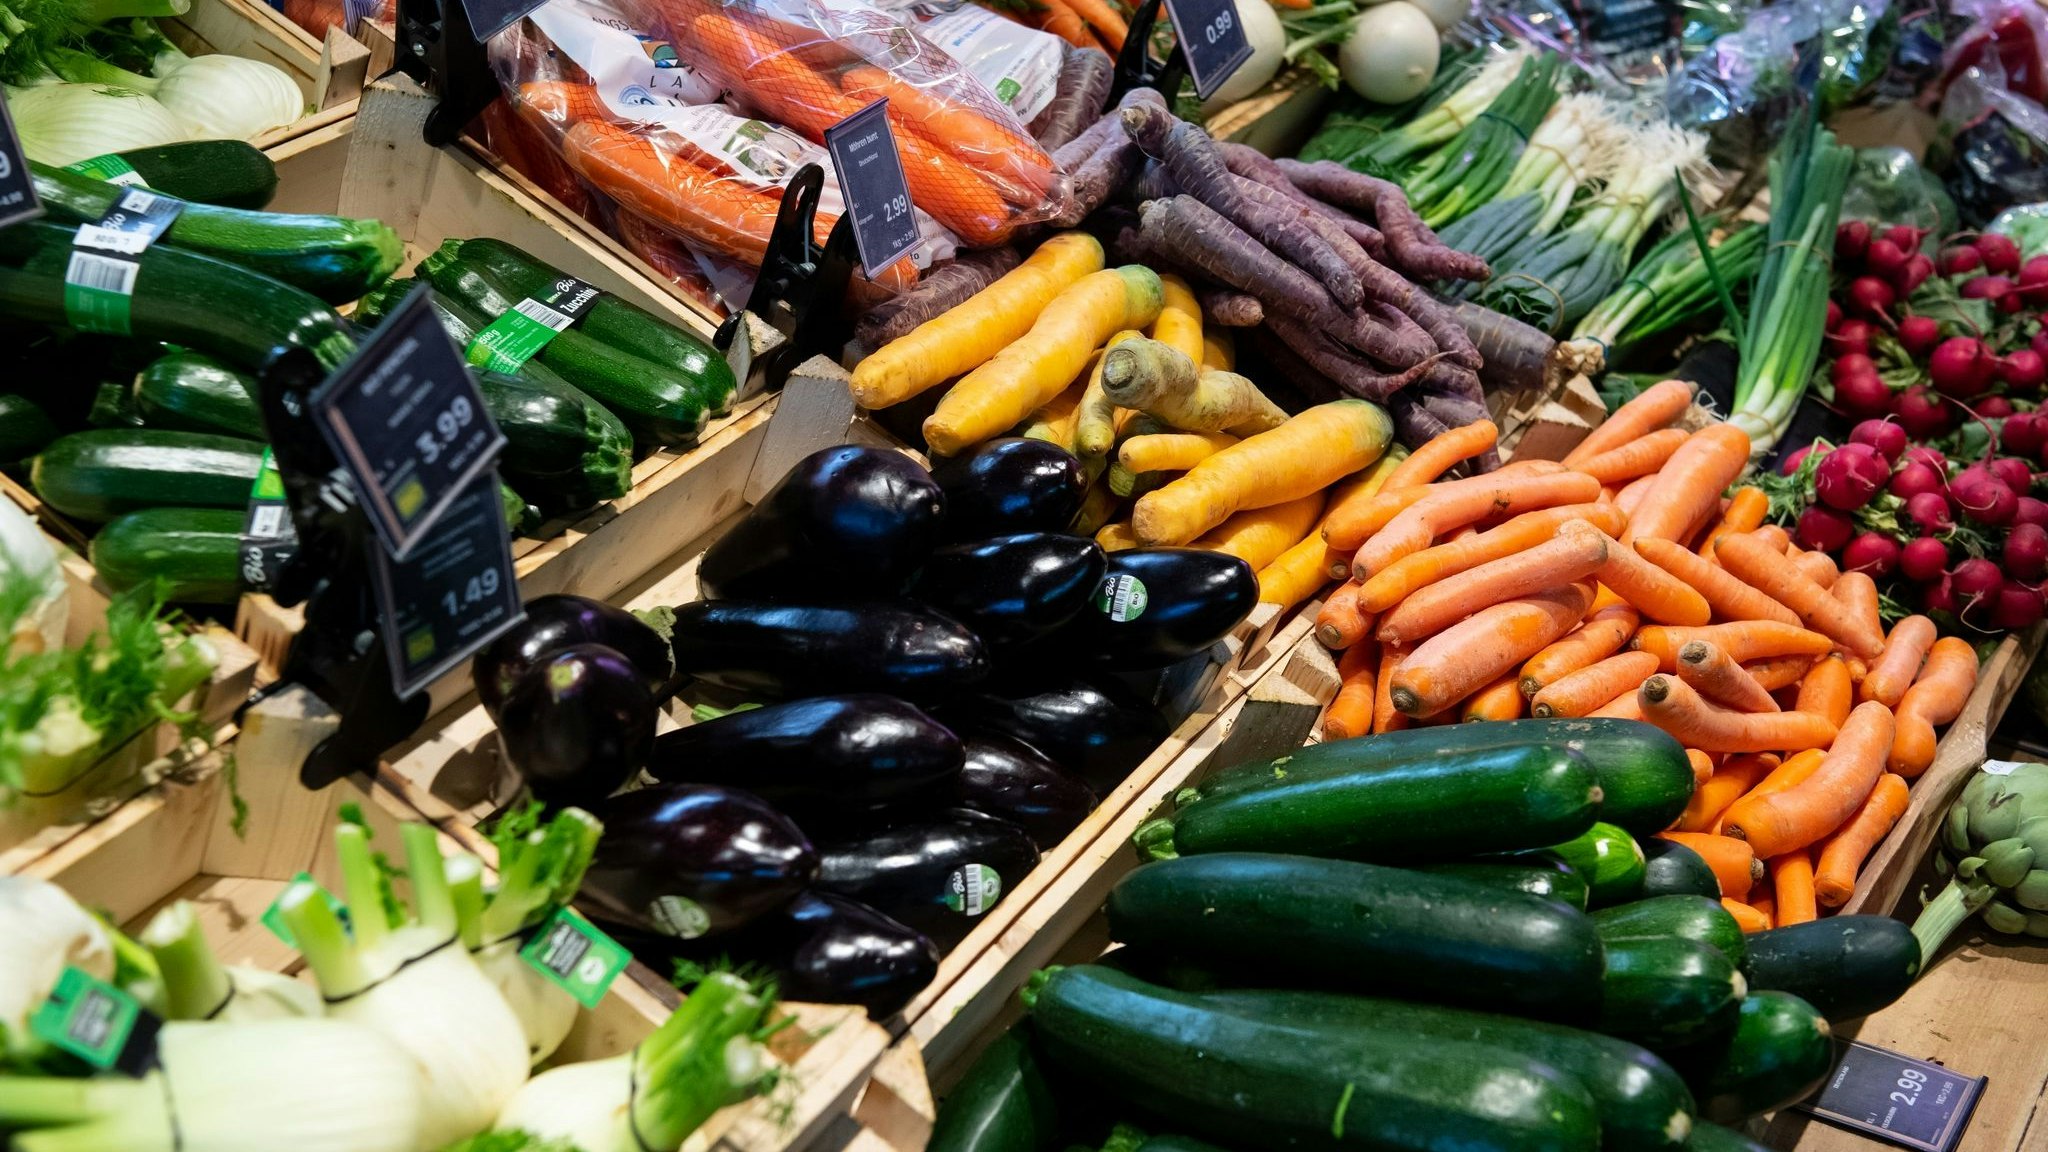 Bio oder Discount? Wegen der hohen Inflation entscheiden sich mehr Konsumenten für die günstigere Variante im Supermarktregal. Foto: dpa/Hoppe